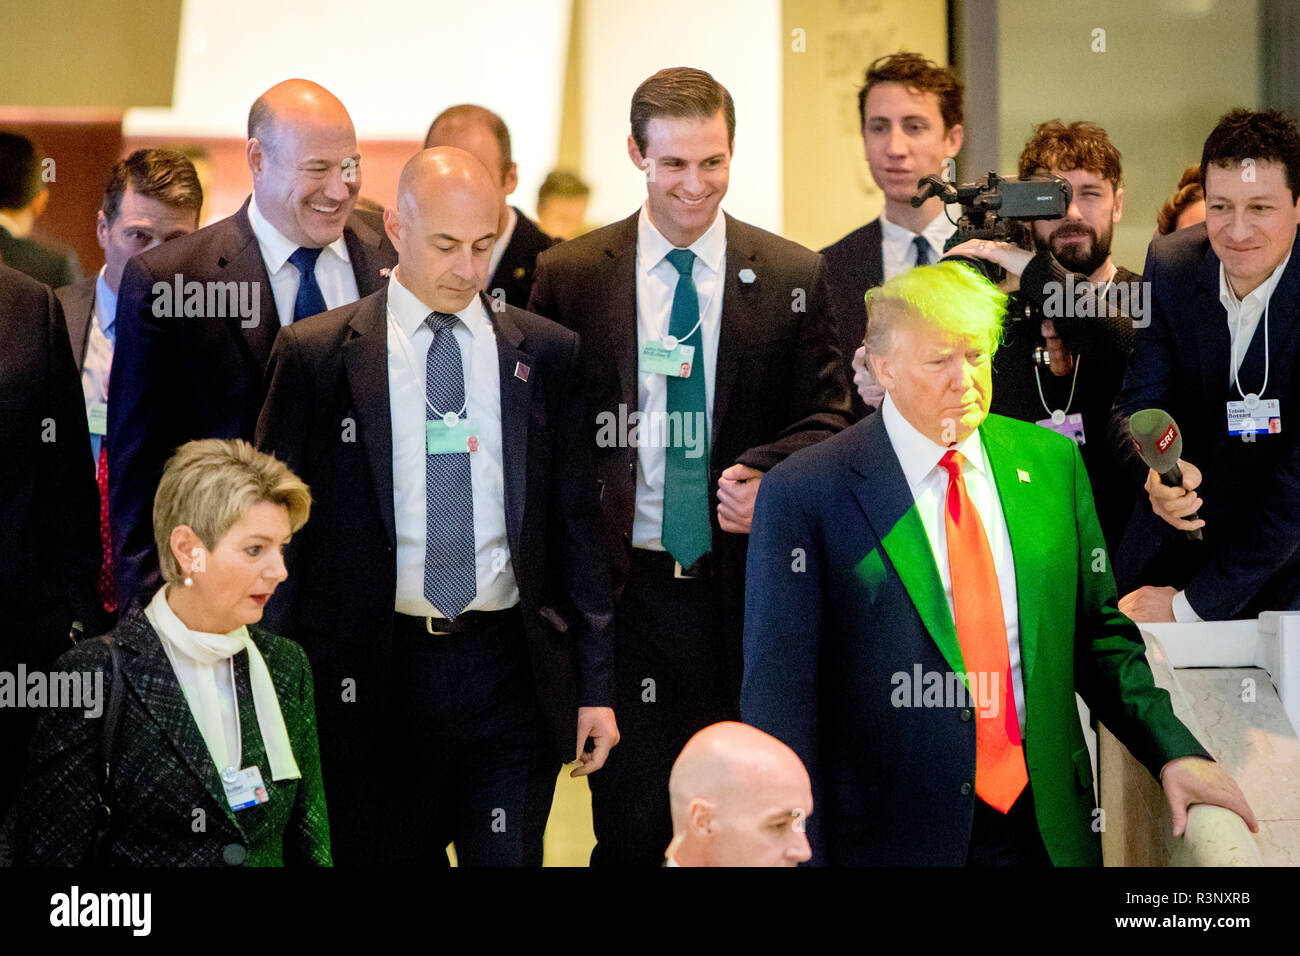 L’ex consigliere economico di Donald Trump, Gary Cohn (a sinistra) e l’ex assistente personale della Casa Bianca John McEntee (al centro) seguono dietro il presidente americano Donald Trump le scale del World Economic Forum - WEF a Davos nel gennaio 2018 mentre entrambi avevano ancora posti di lavoro nell’amministrazione Trump. Foto Stock